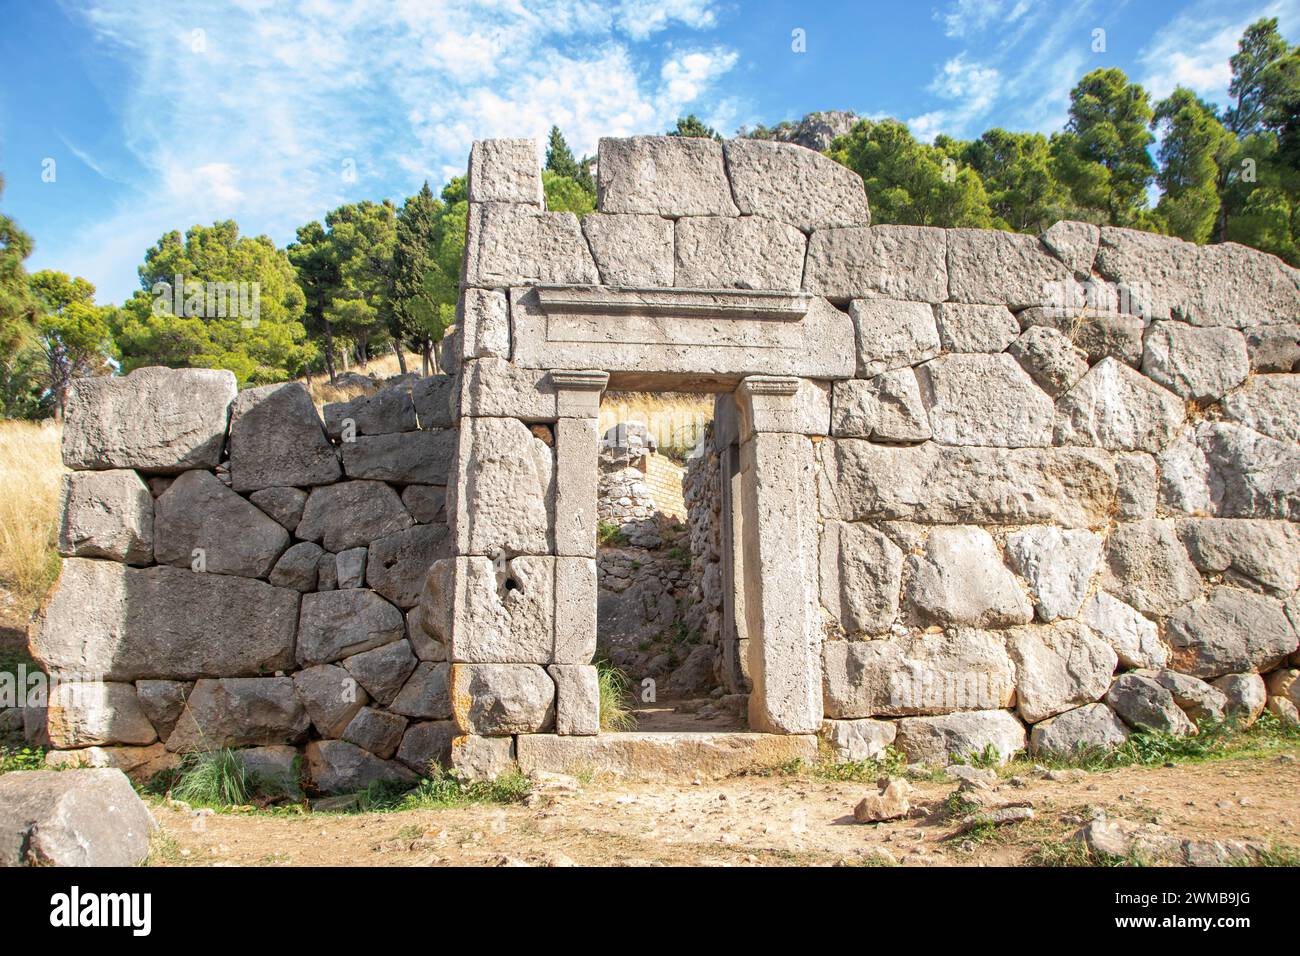 Le temple de Diane à Cefalu , situé dans la roche ( rocca) avec des murs mégalithiques, Sicile, Italie Banque D'Images